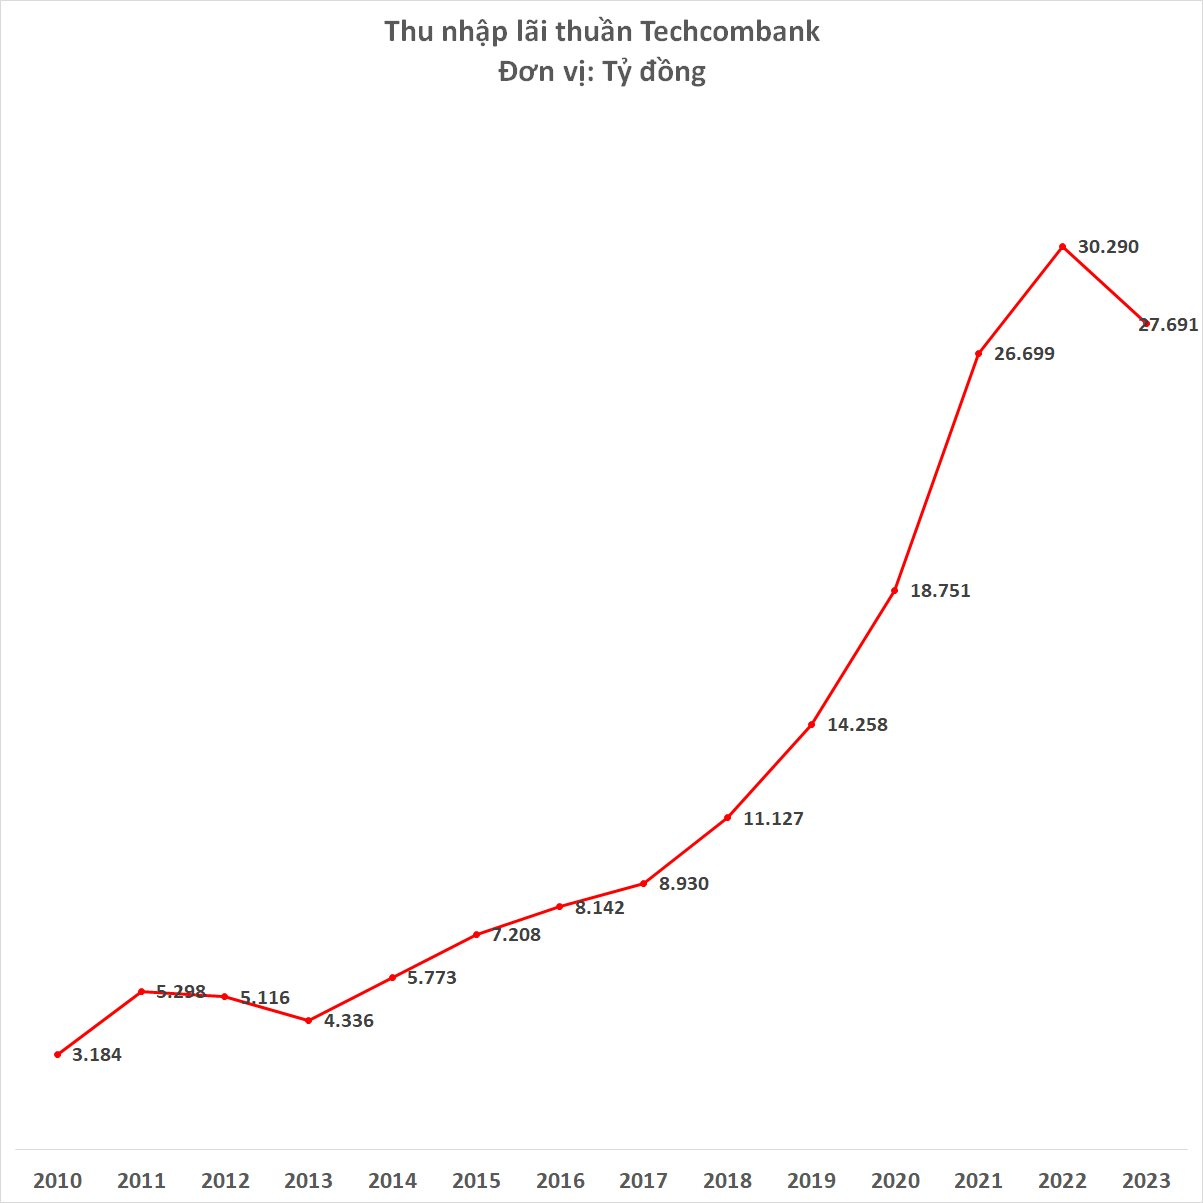 Lợi nhuận Techcombank giảm 11% năm 2023 sau 9 năm tăng trưởng liên tiếp - Ảnh 2.